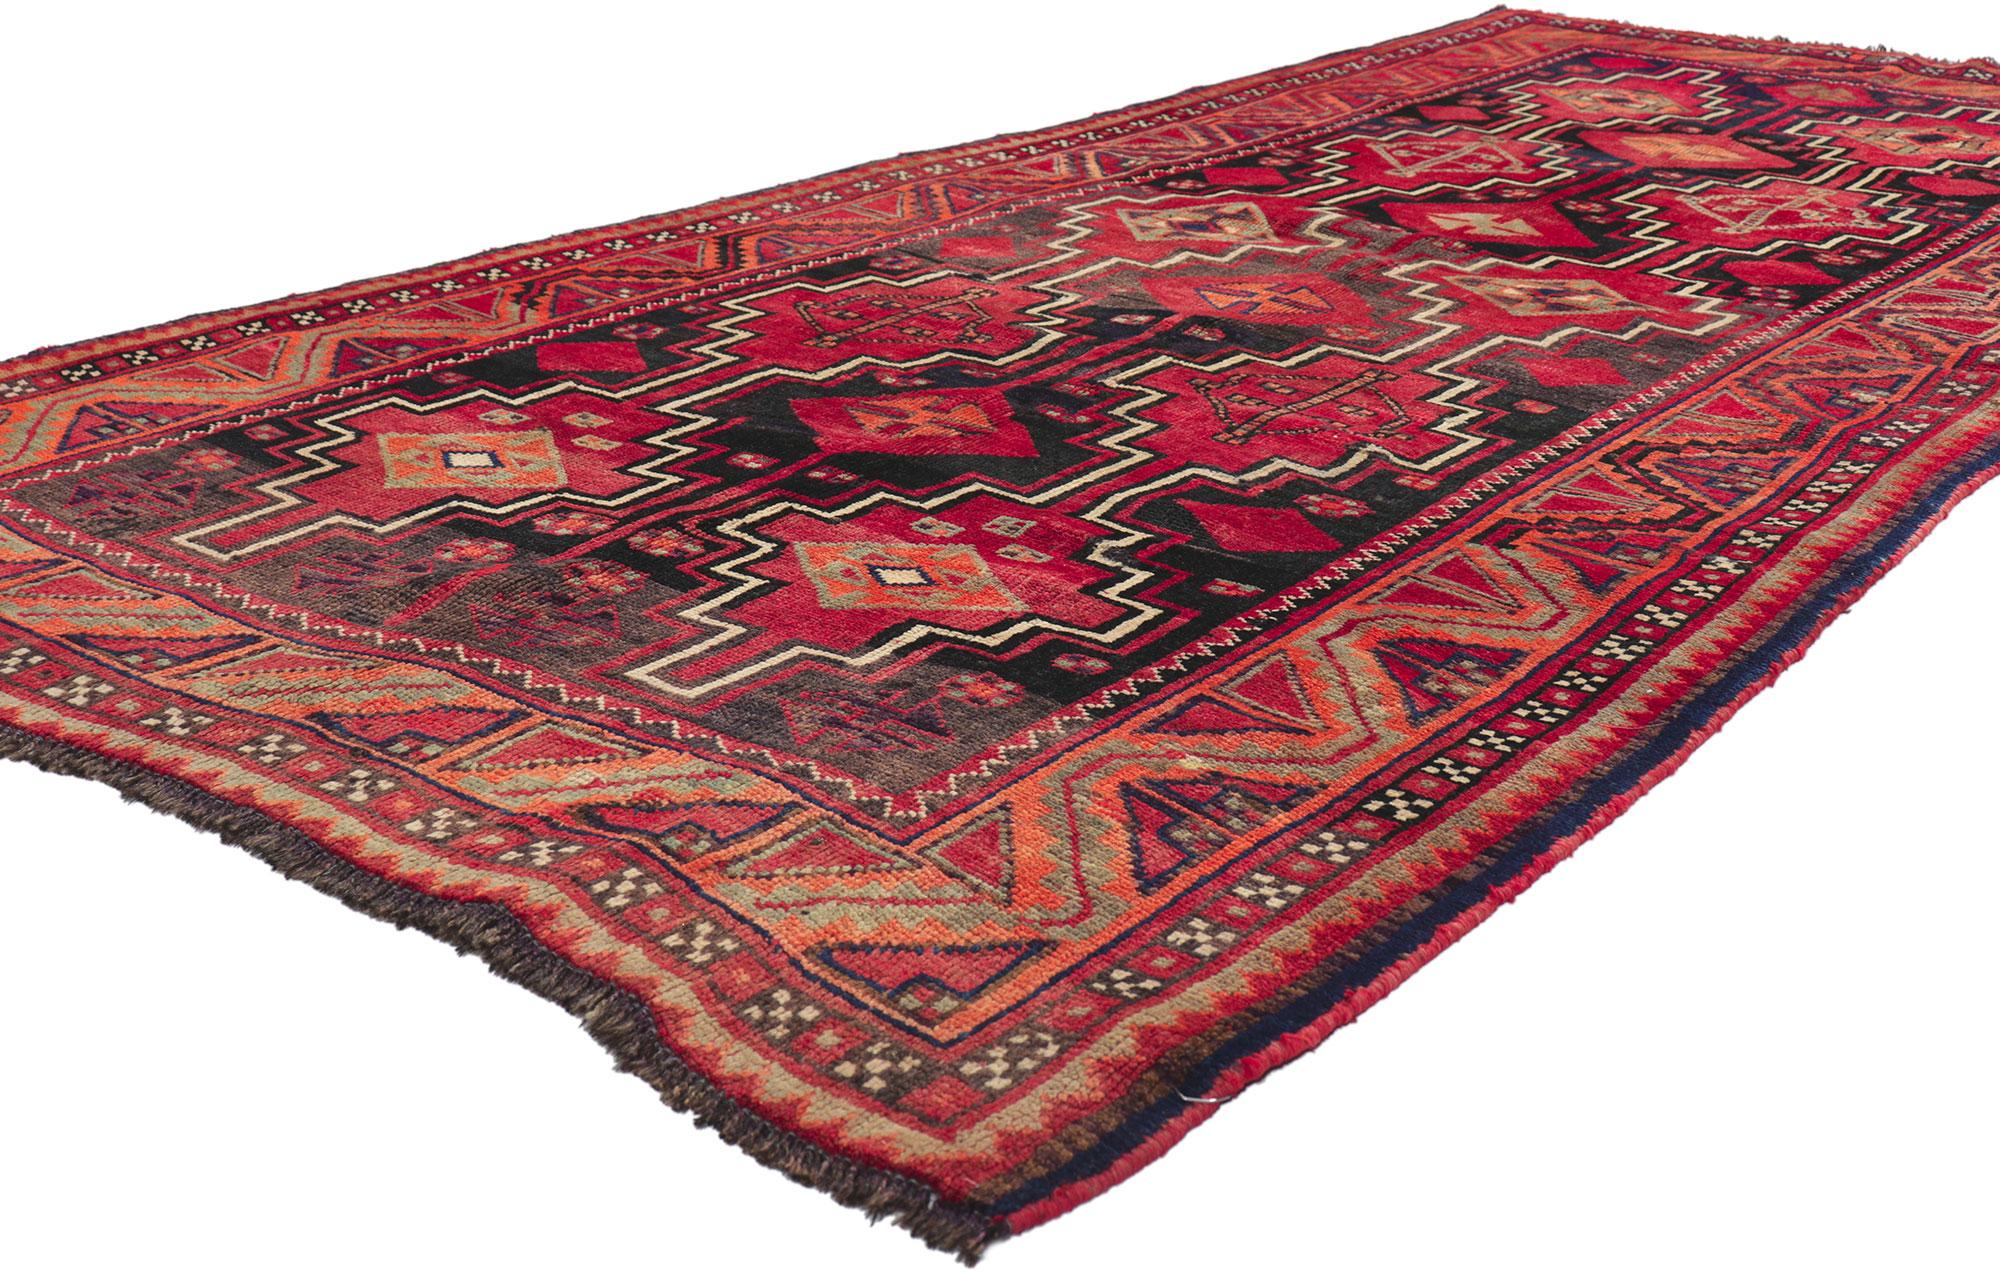 61221 Tapis Persan Vintage Shiraz, 04'05 x 09'03.
Plein de petits détails et de charme nomade, ce tapis persan vintage Shiraz en laine noué à la main est une vision captivante de la beauté tissée. Le design tribal accrocheur et les couleurs vives de